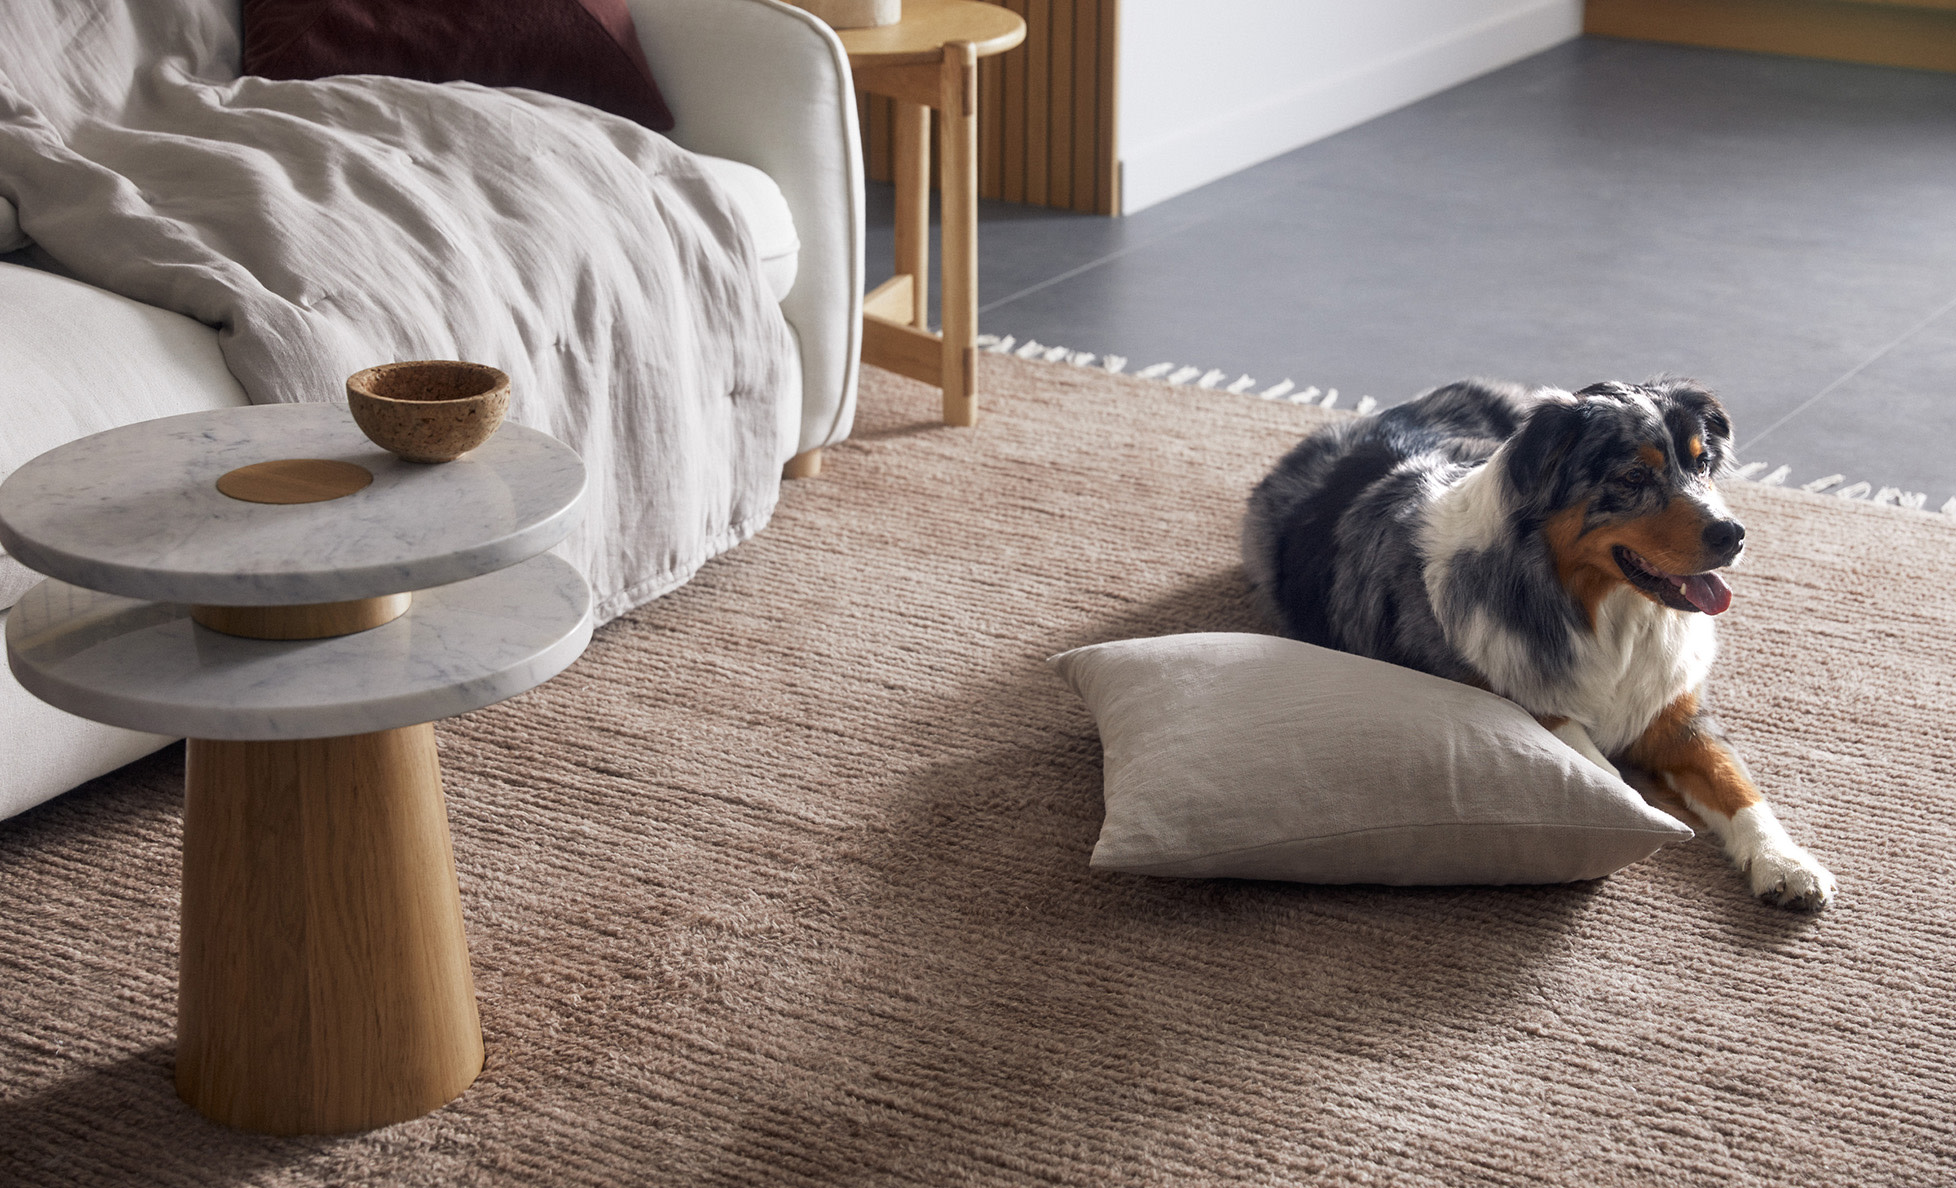 A dog sitting on a plush wool rug